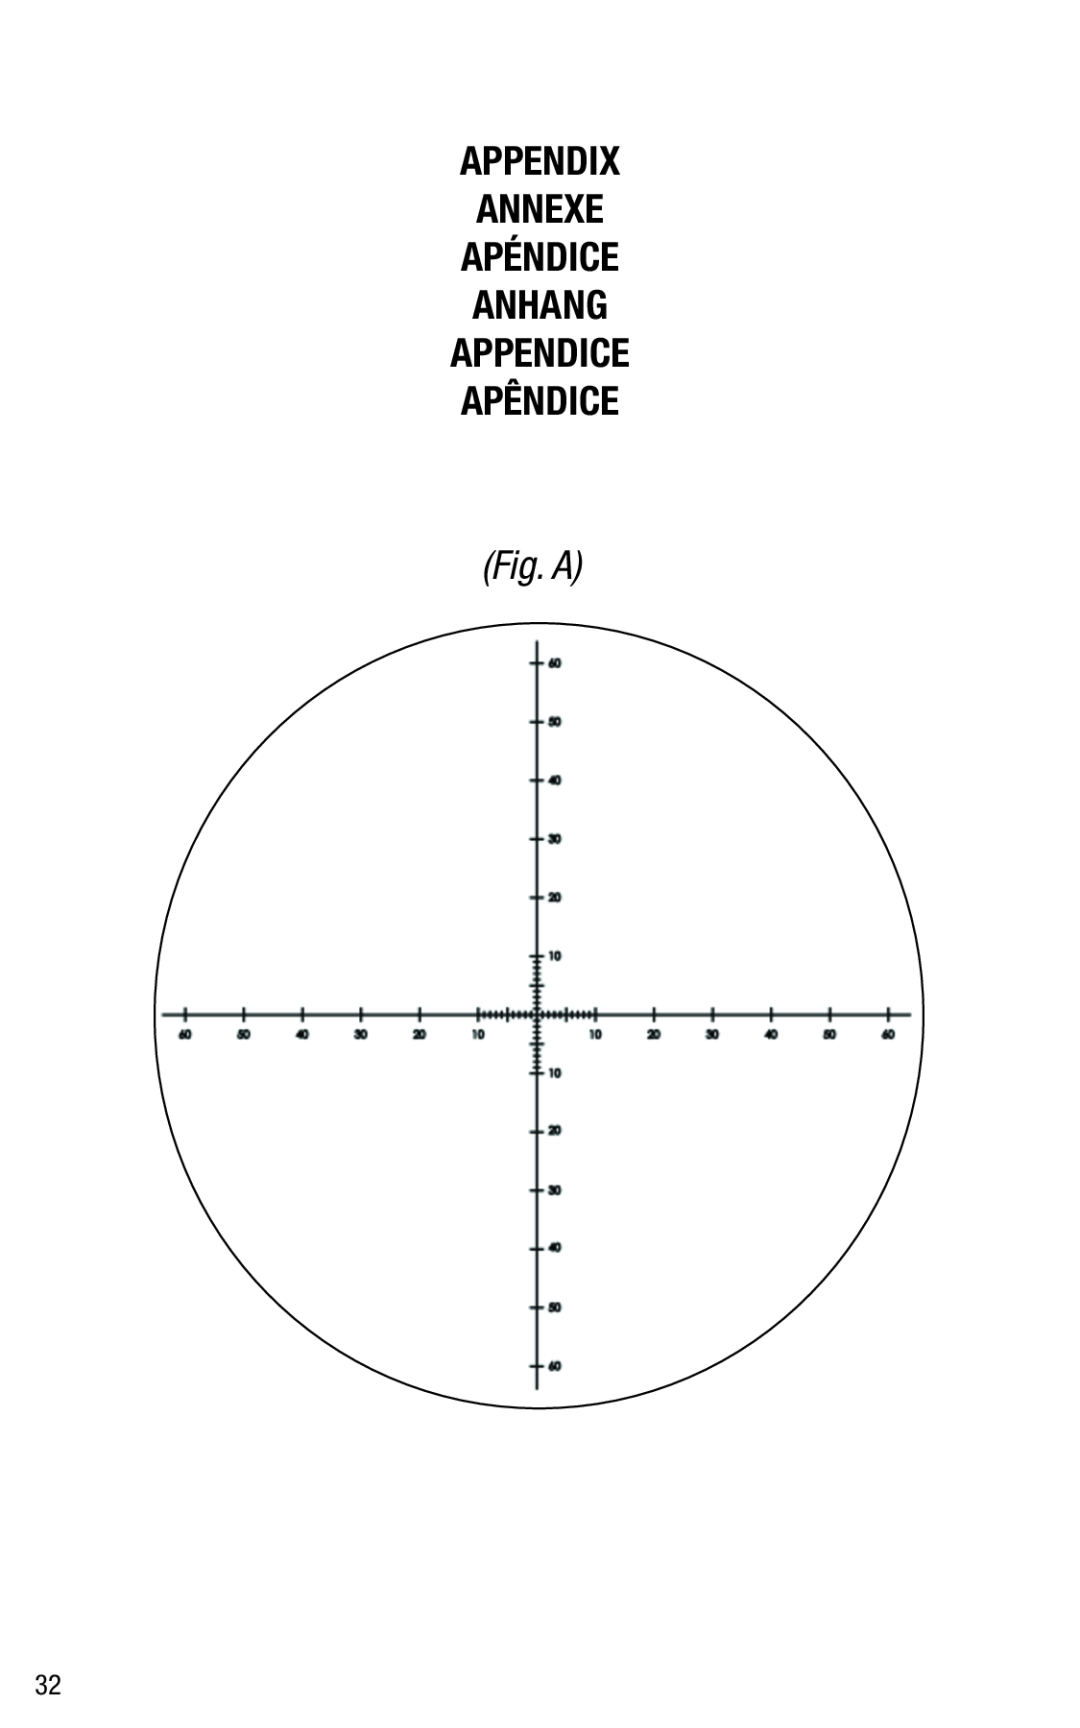 Bushnell 191144 instruction manual Appendix Annexe Apéndice Anhang Appendice Apêndice, Fig. A 